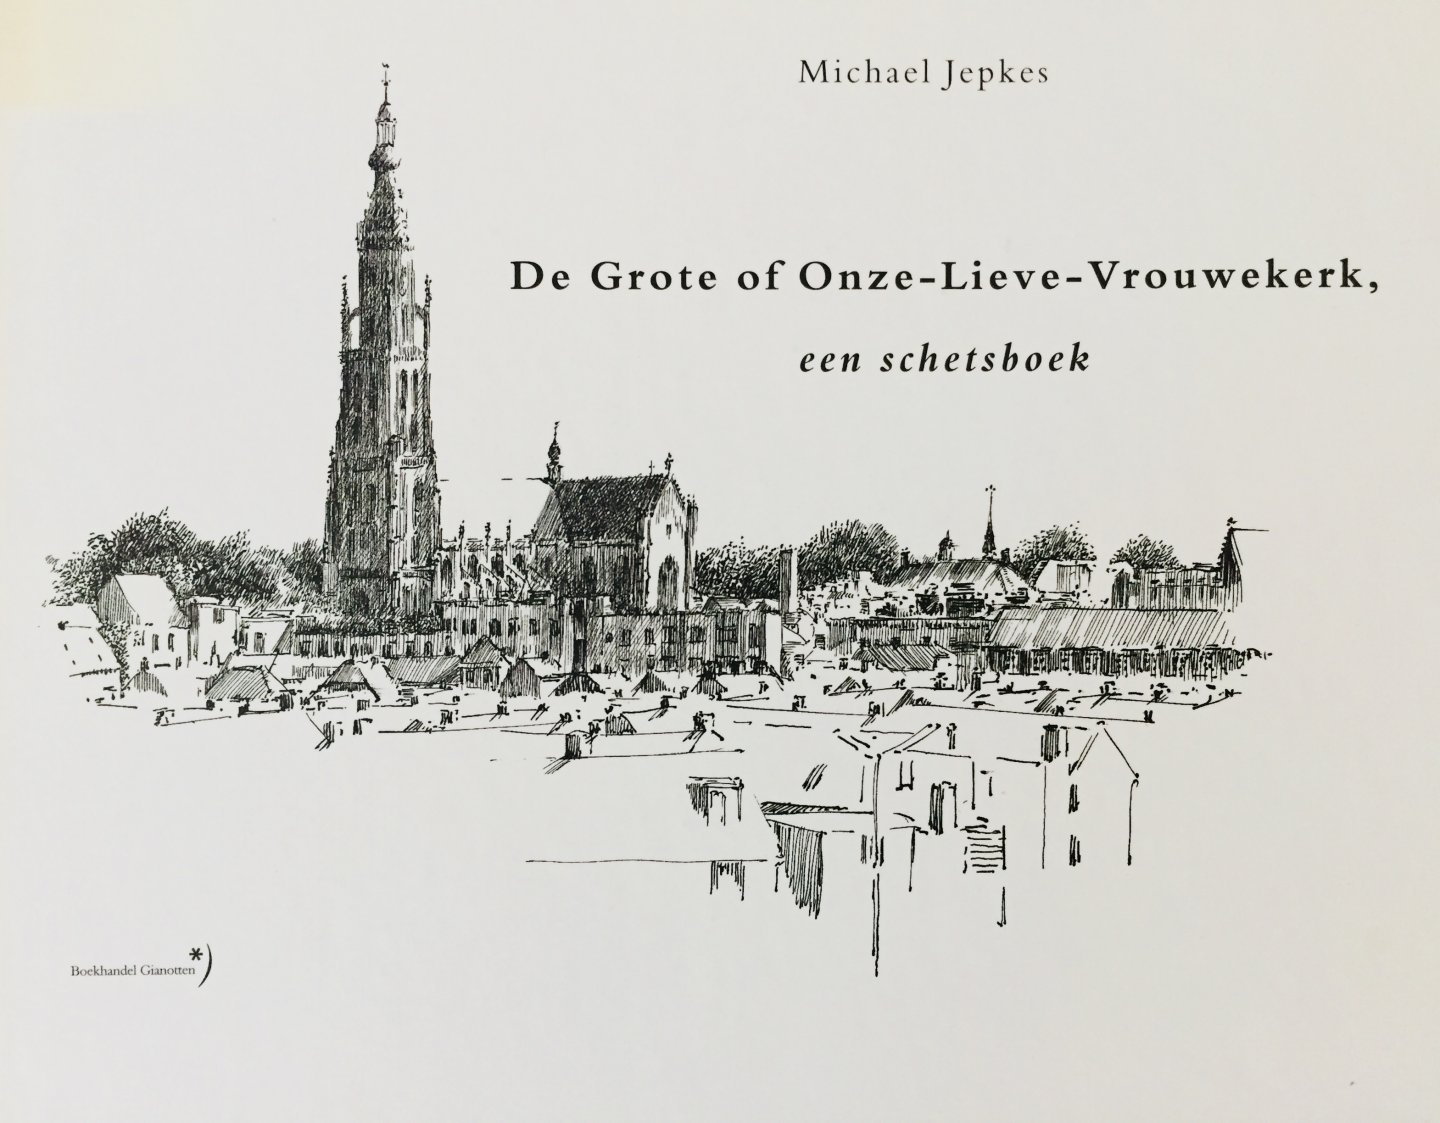 Jepkes, Michael. - De Grote of Onze-Lieve-Vrouwekerk, een schetsboek. Breda